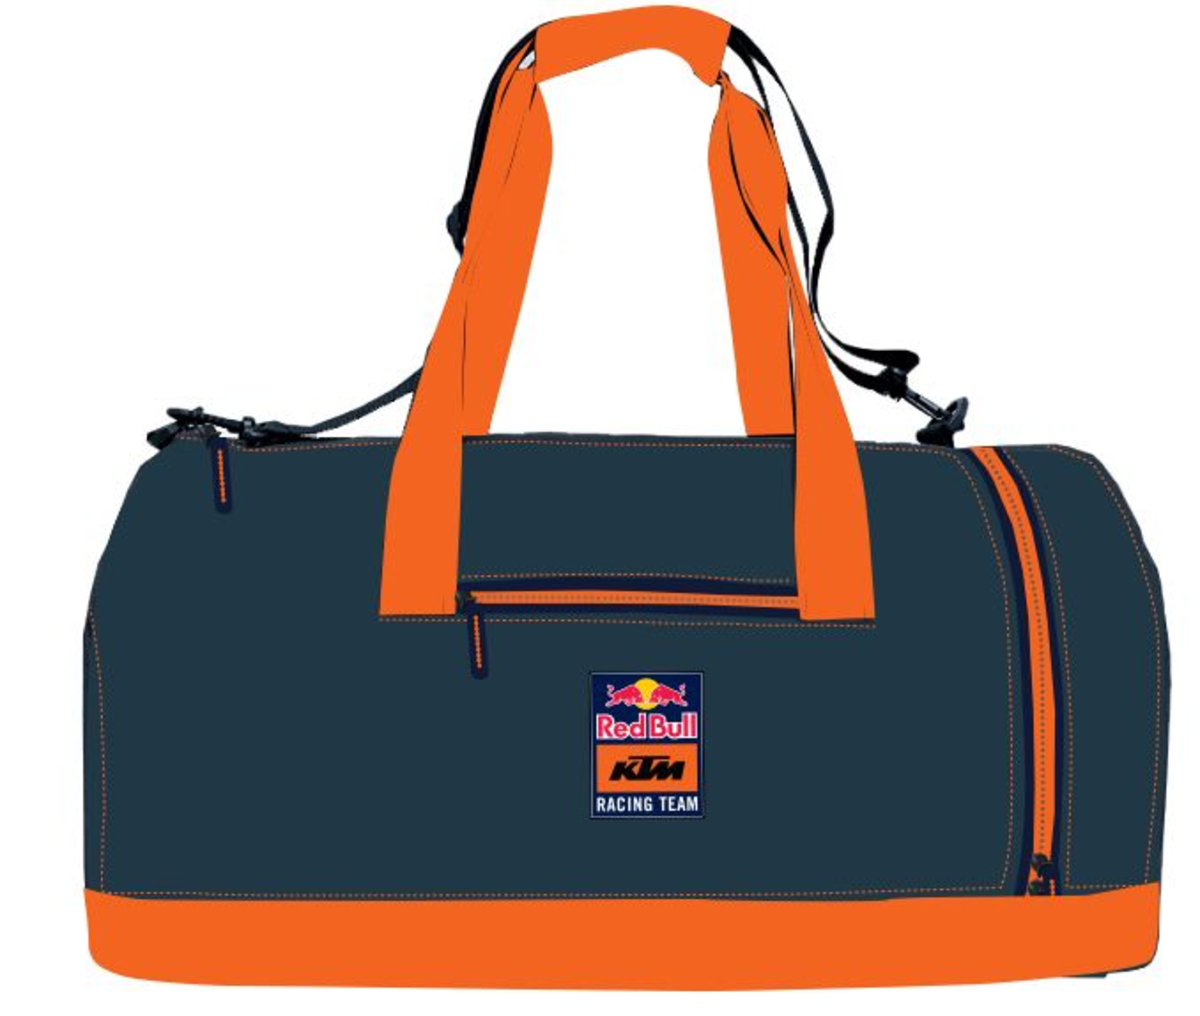 Rb Carve Sports Bag